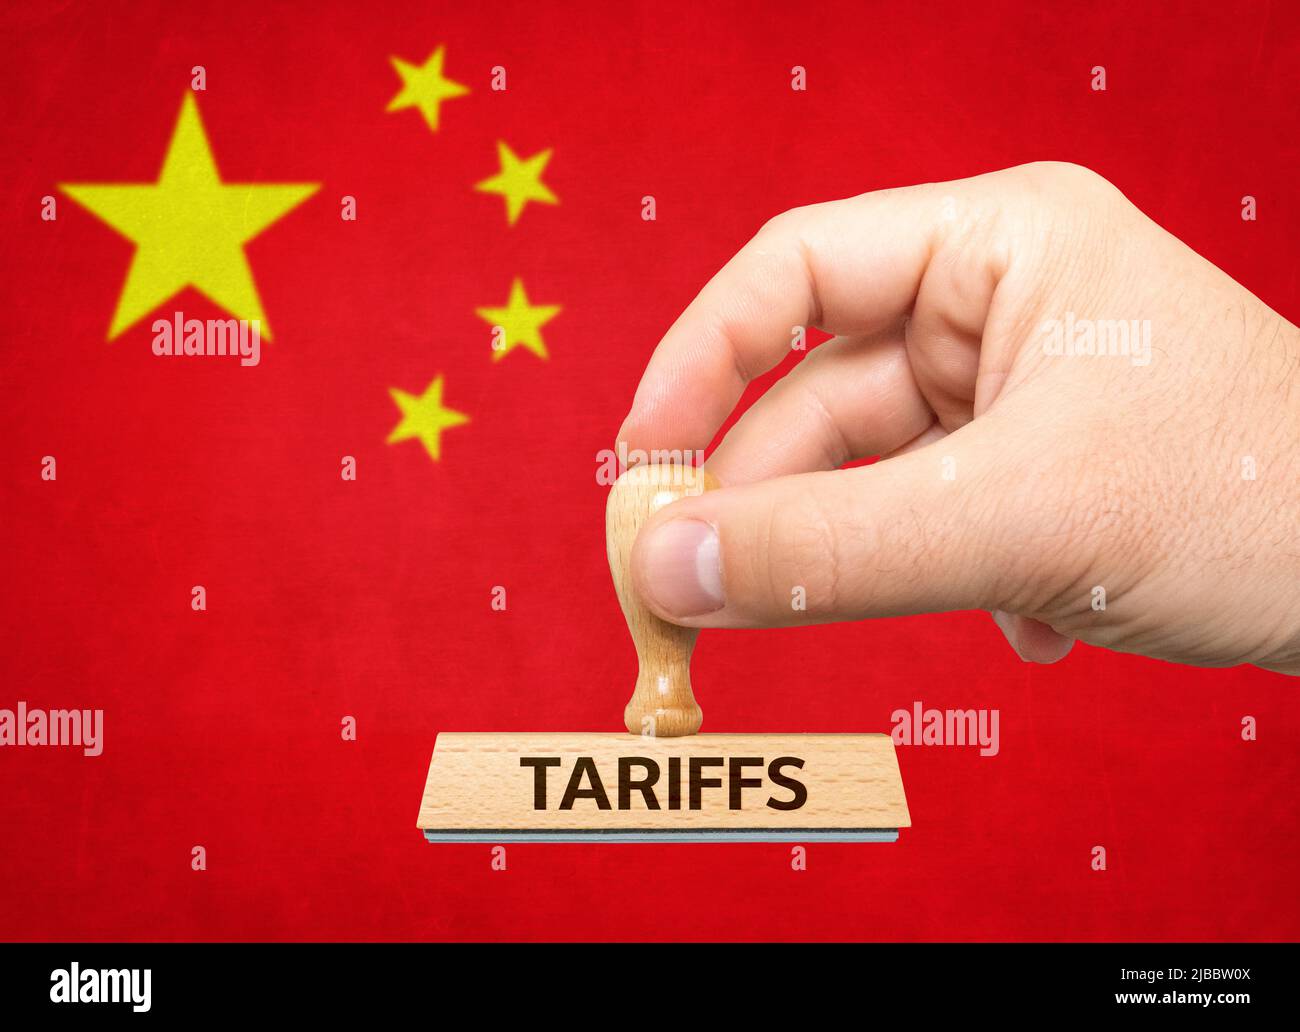 Tarifas - mano con sello y bandera china Foto de stock